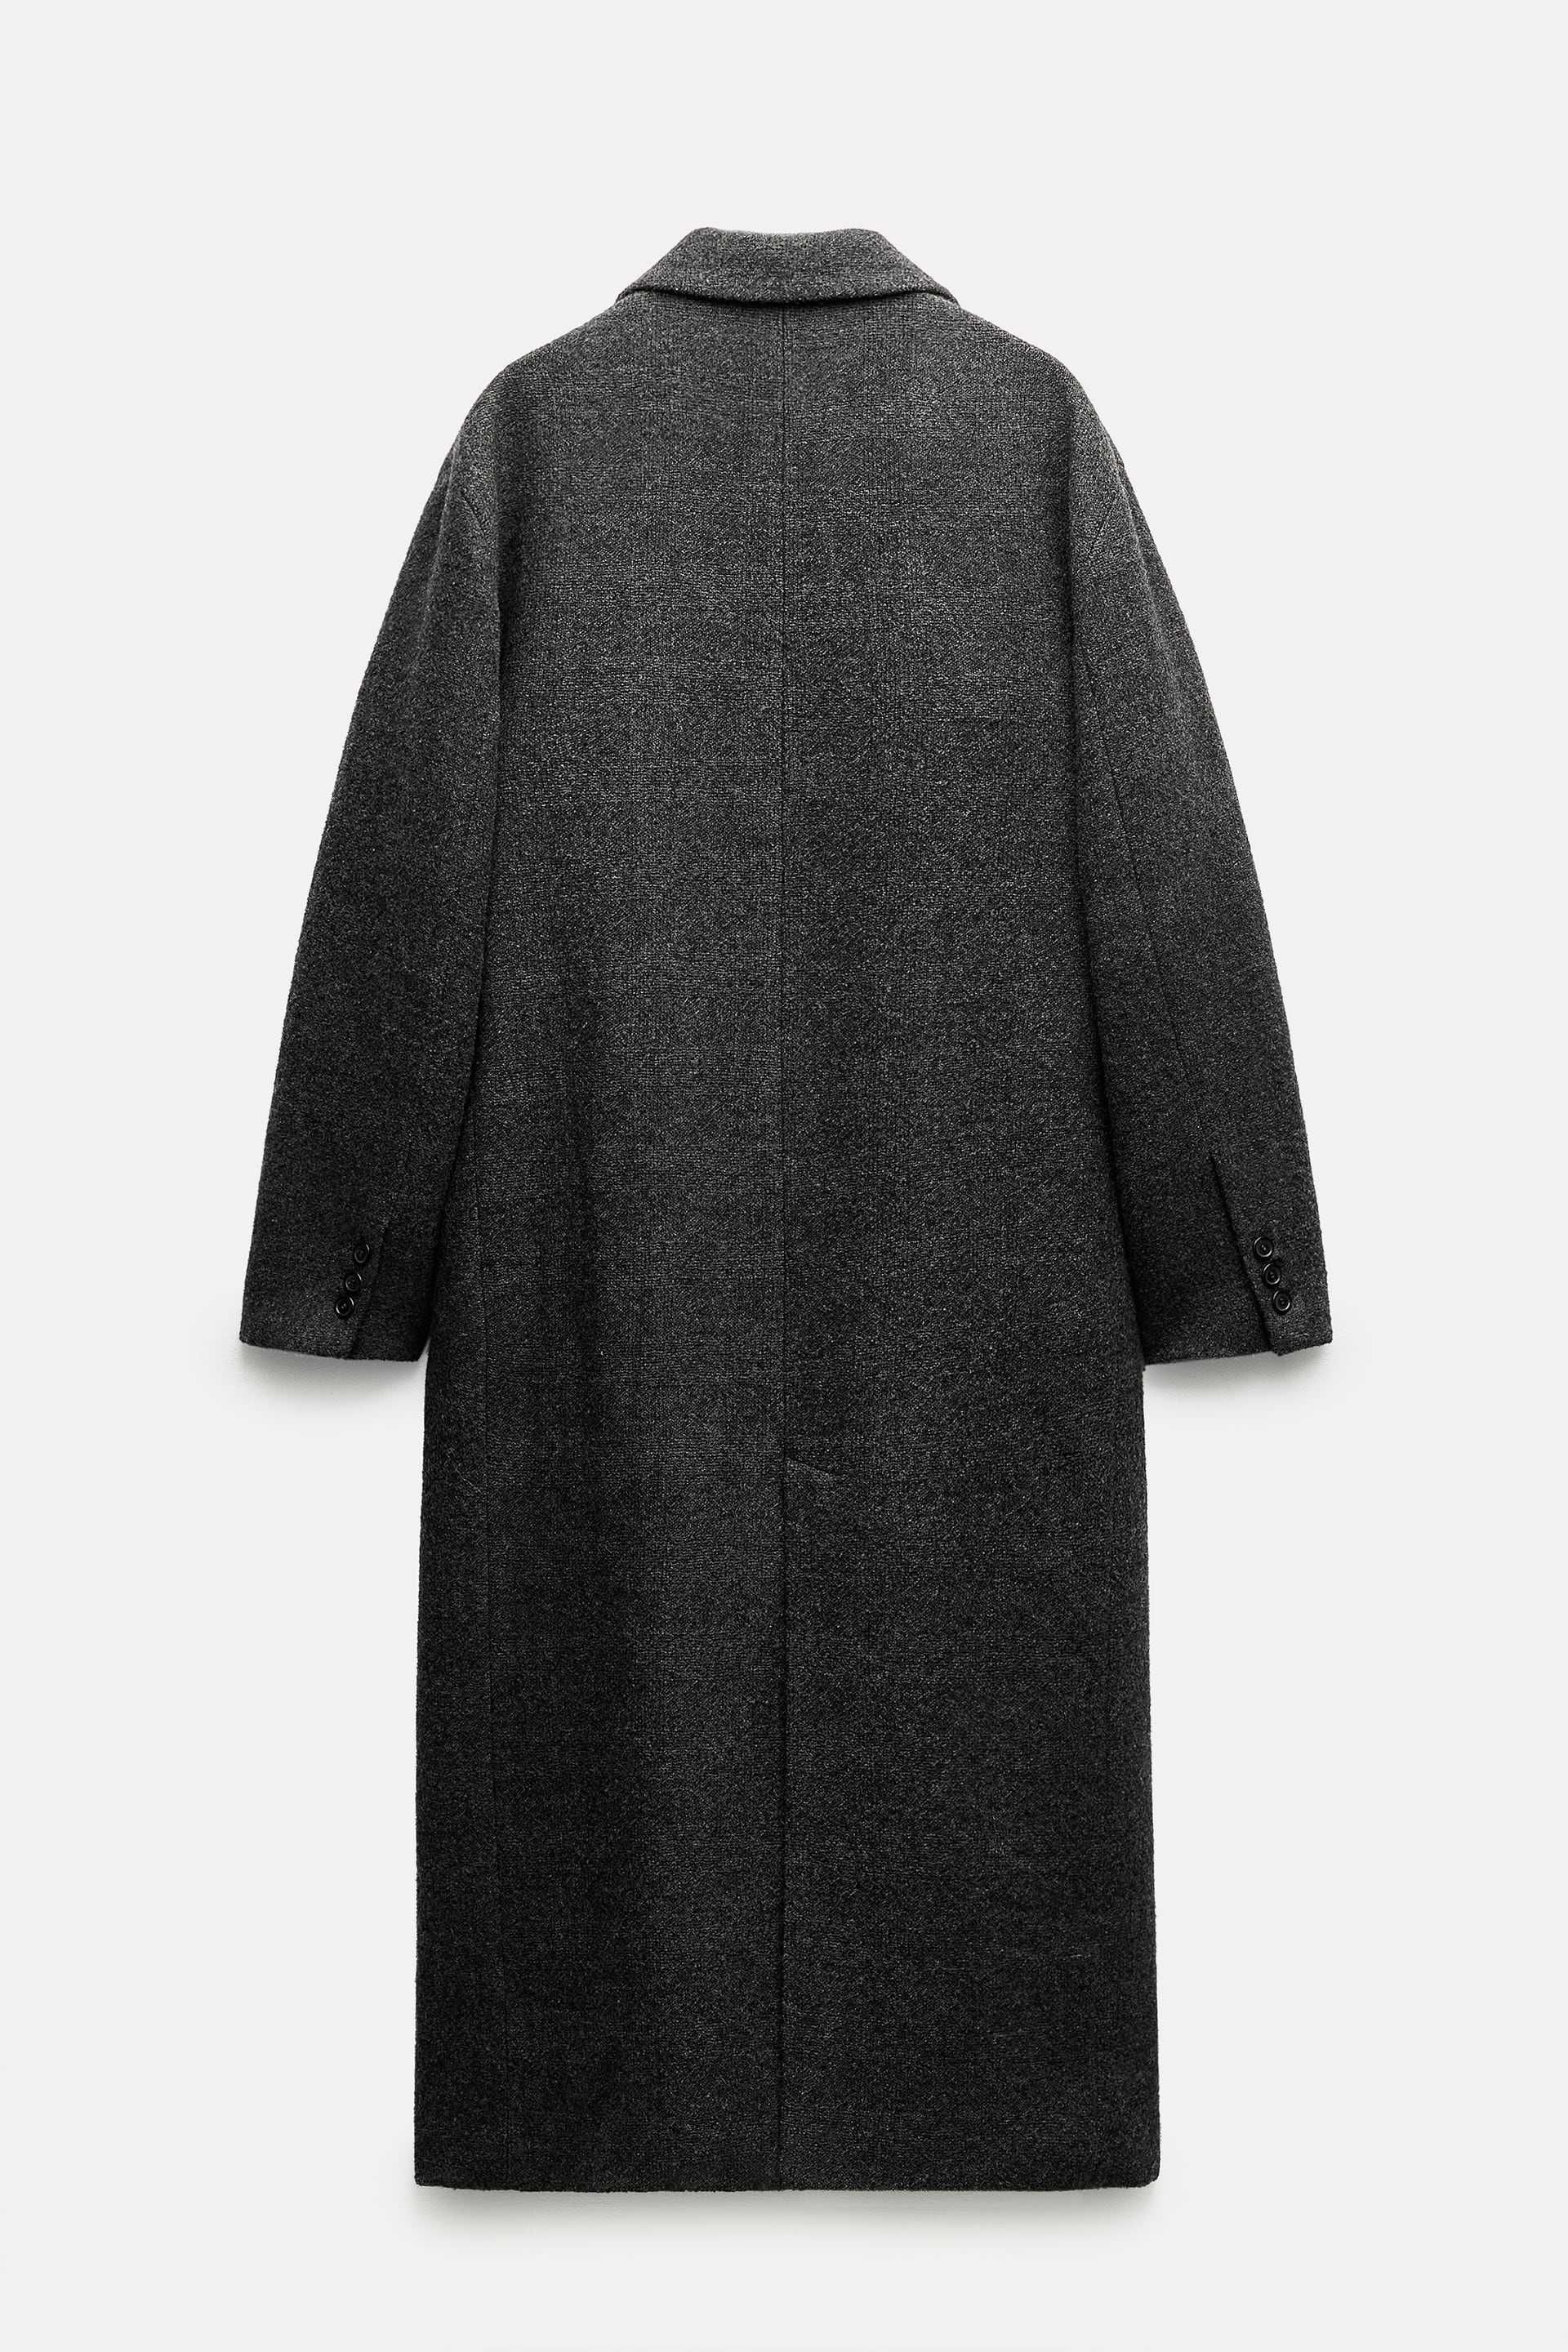 Palton premium Zara, 100% din lână, cu etichetă, XS-S - colecția nouă